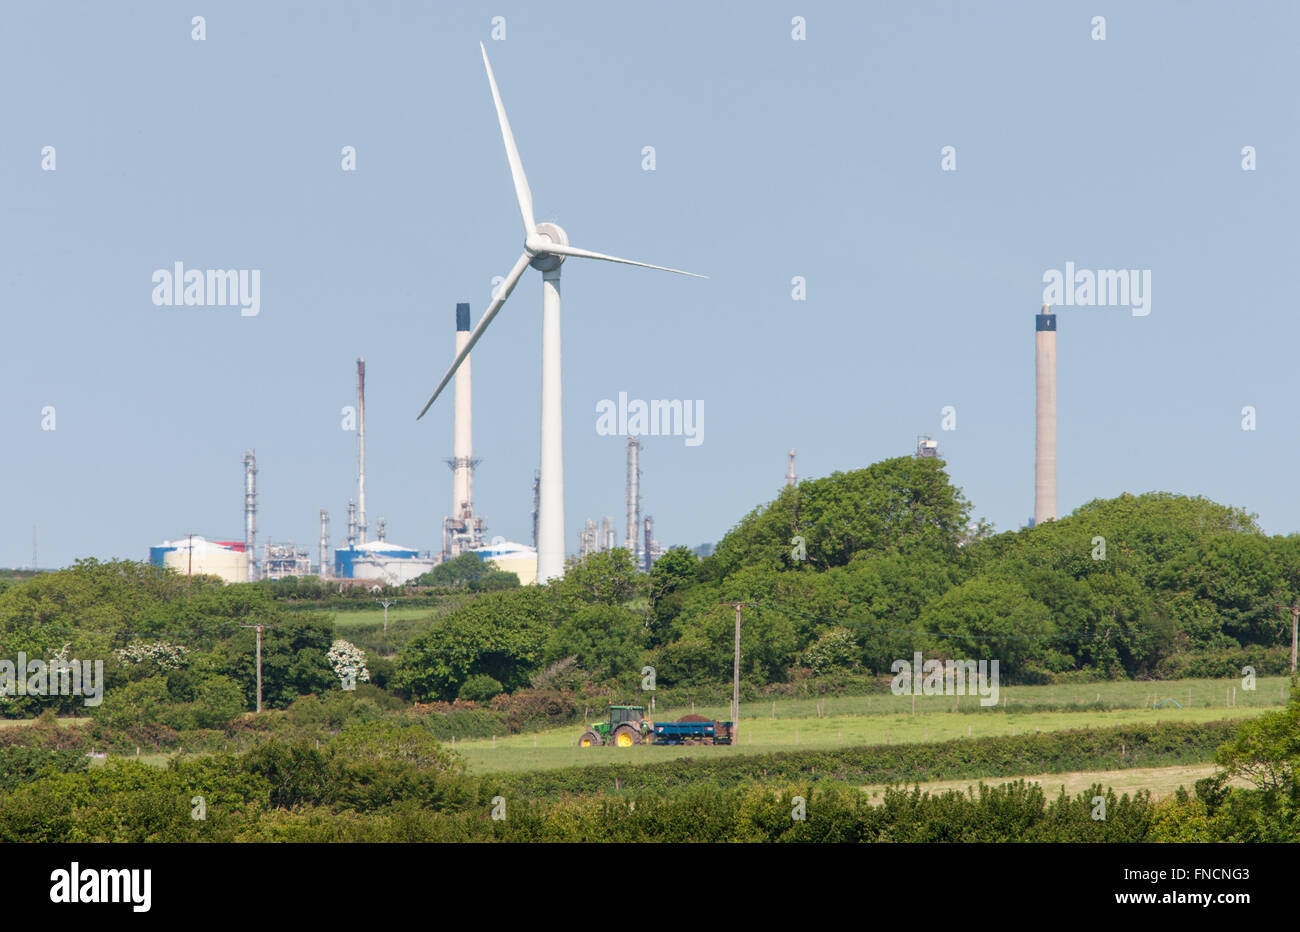 En la orilla turbina eólica y Milford Haven, refinería de petróleo y el tractor en el campo,campo,oeste de Gales pembrokeshire, Gales, Reino Unido. Foto de stock